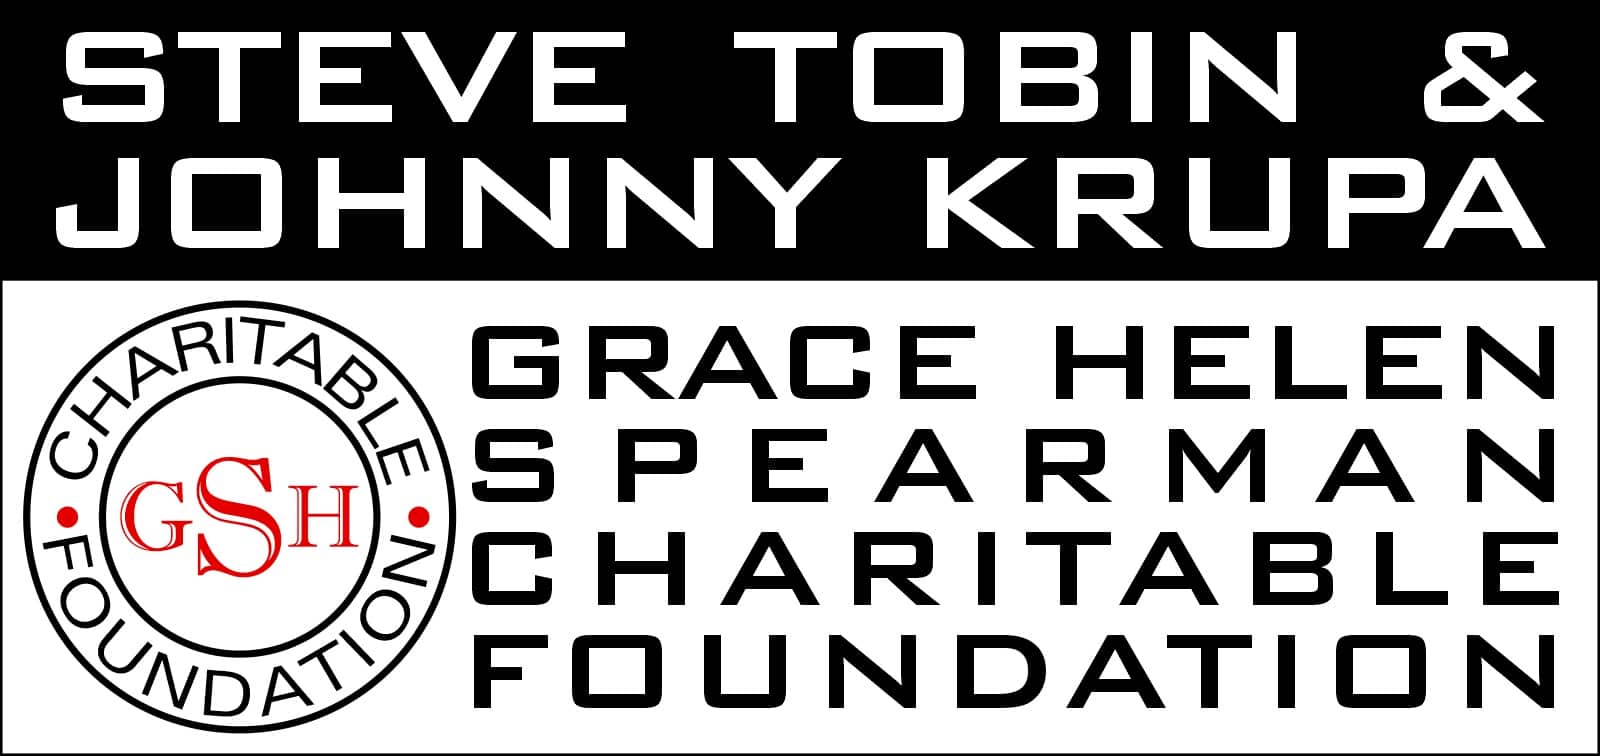 Grace Helen Spearman Charitable Foundation.